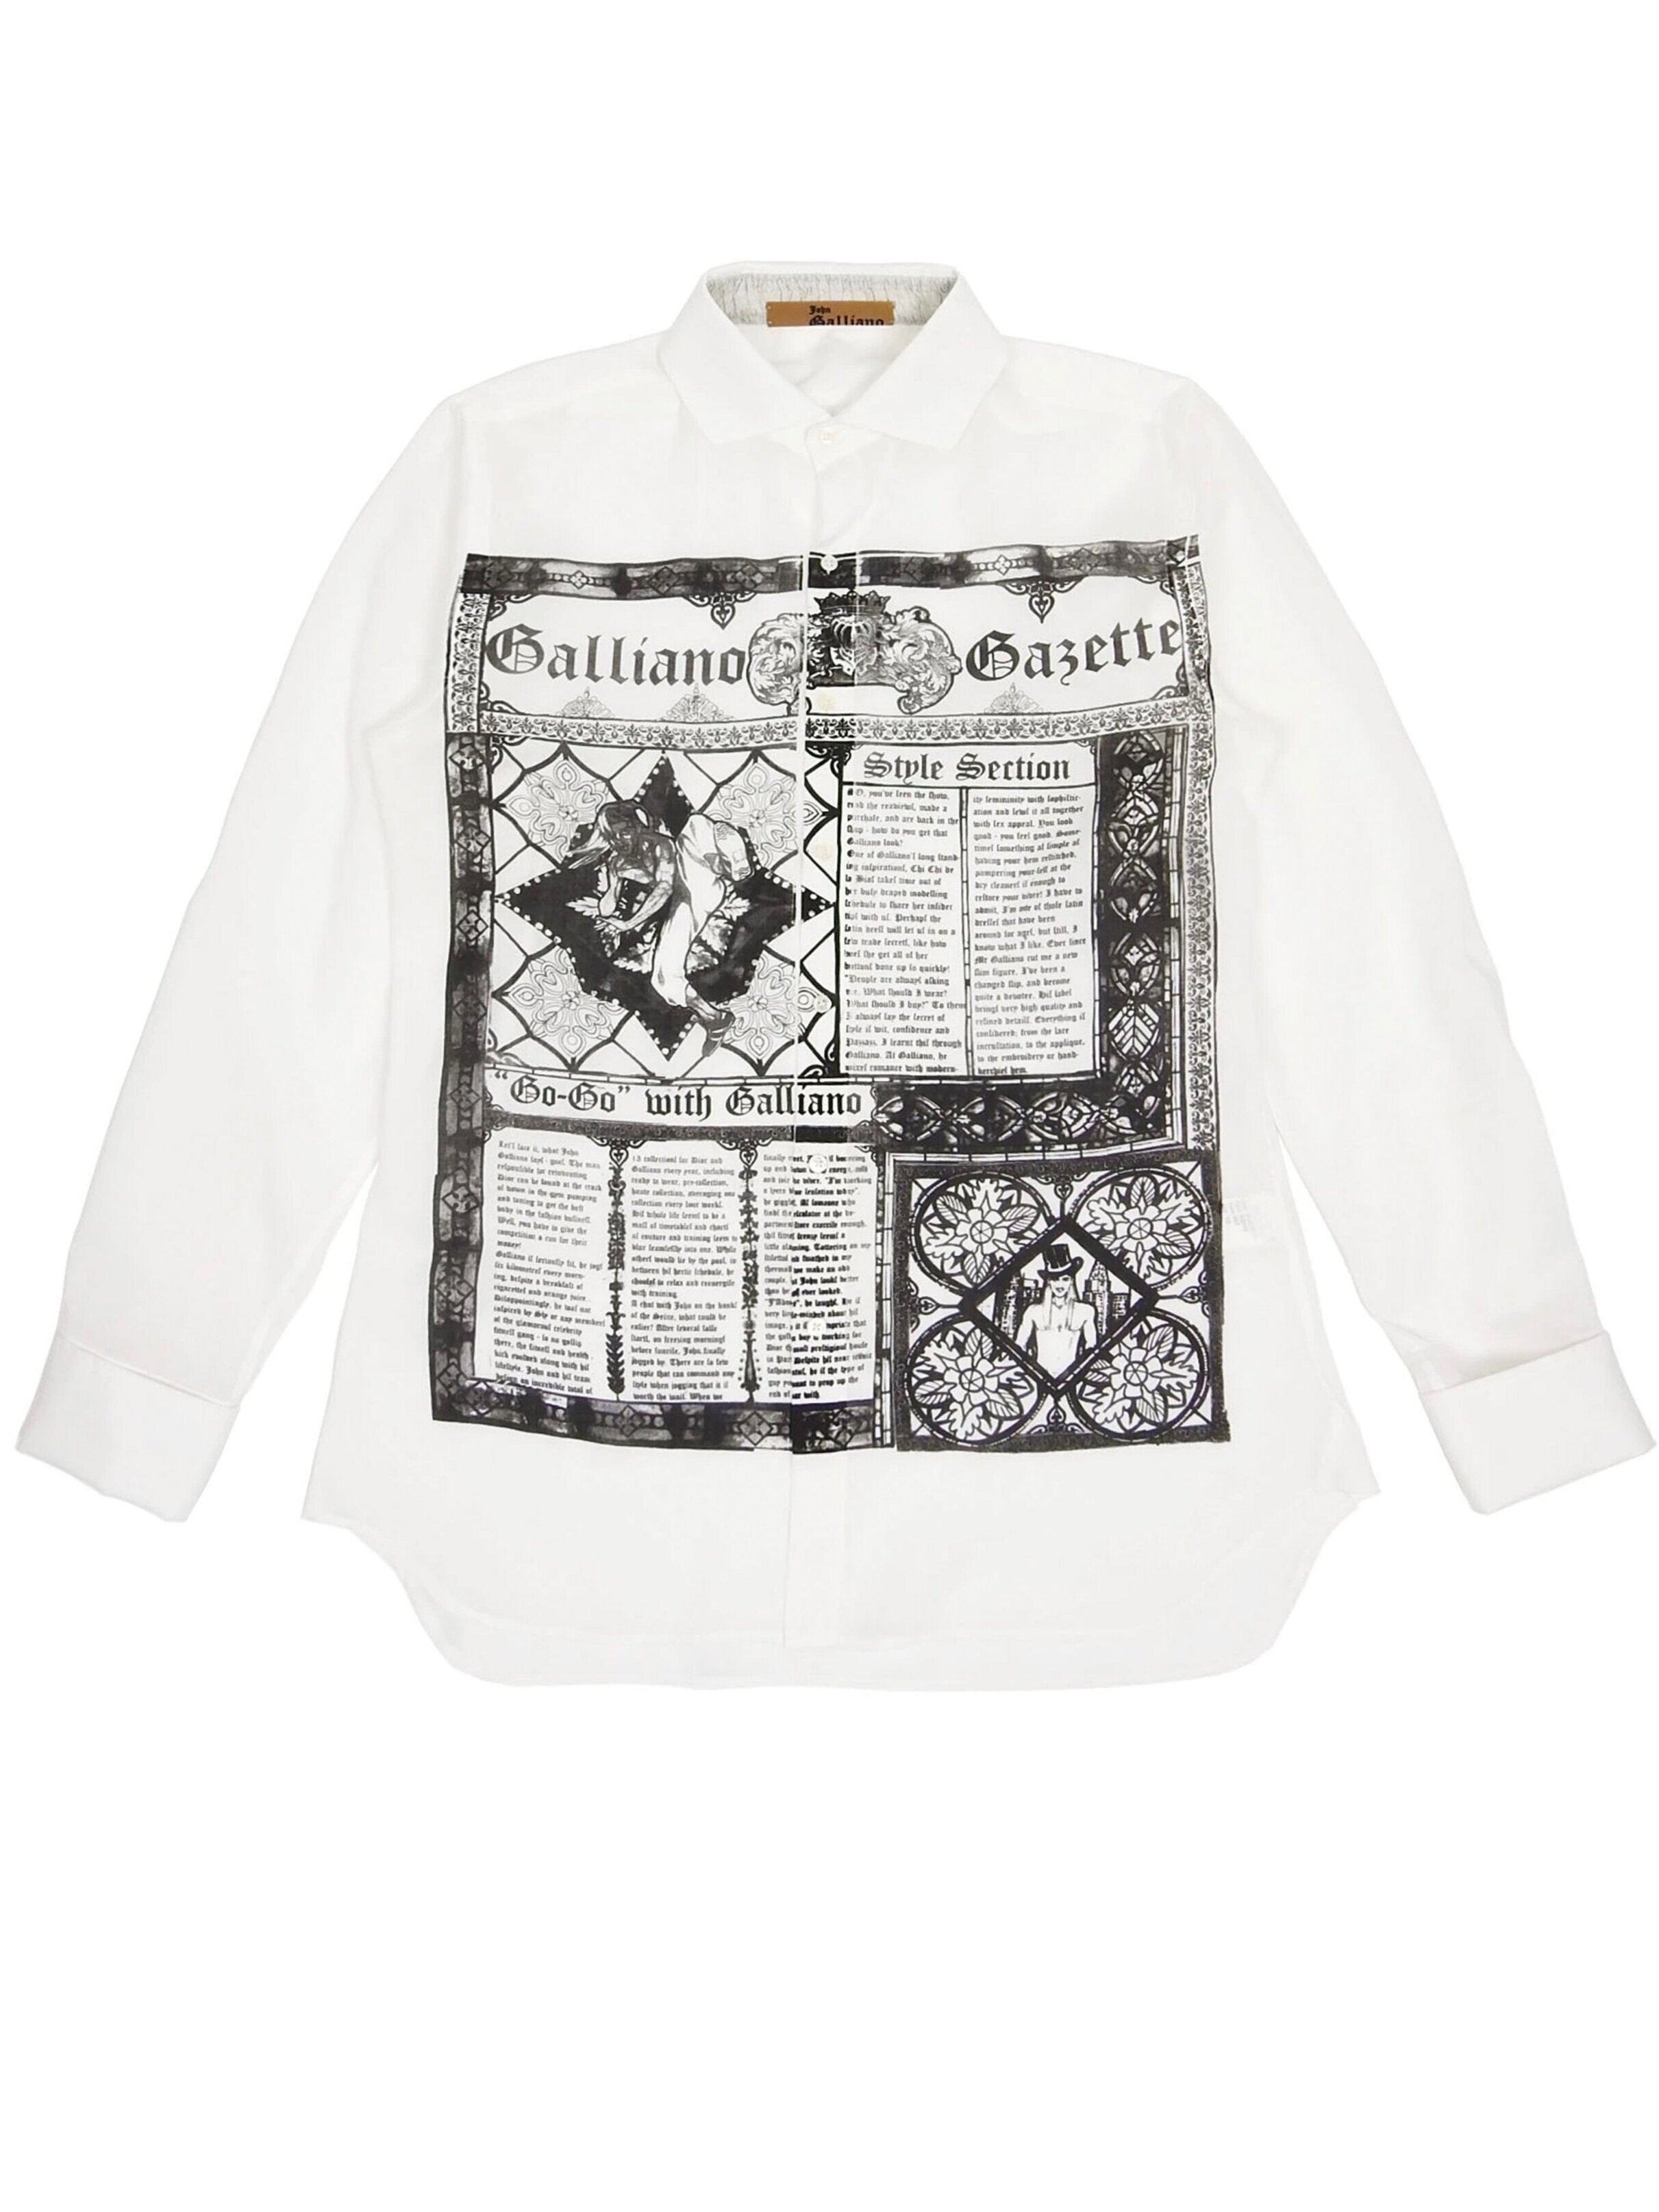 John Galliano 2000s Rare Gazette Sheer Shirt